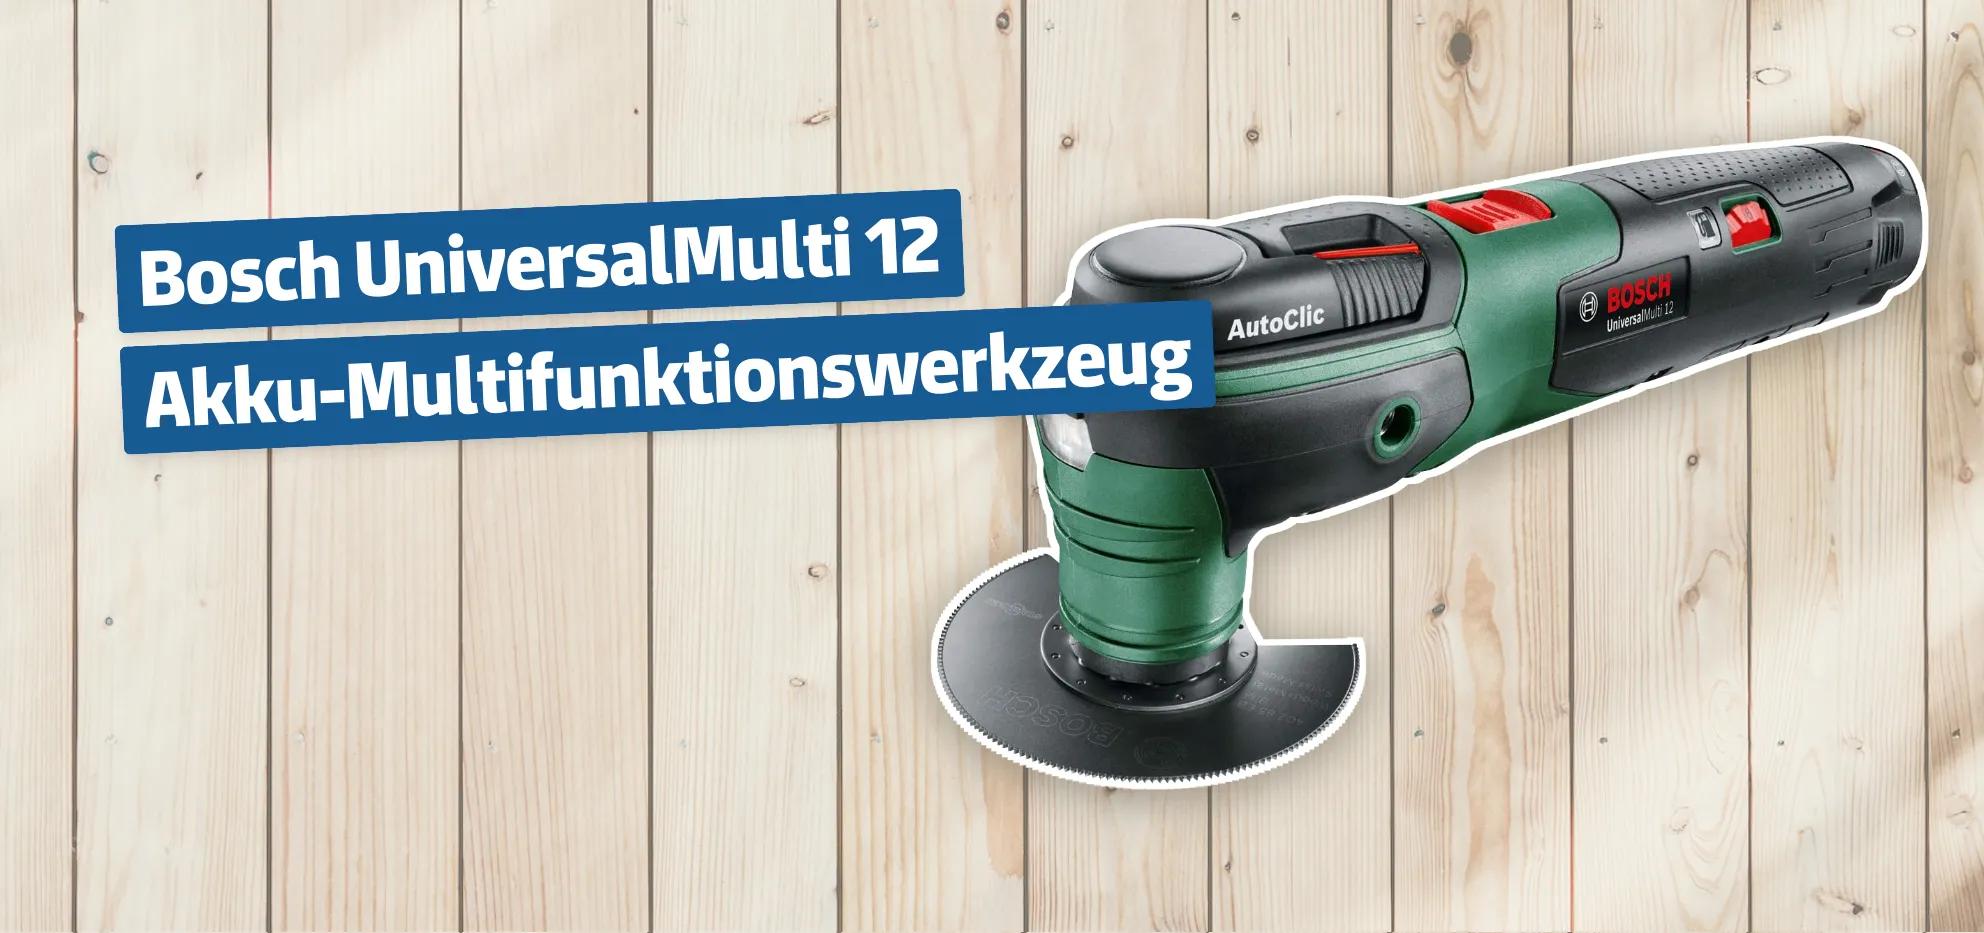 Bosch UniversalMulti 12 Akku-Multifunktionswerkzeug